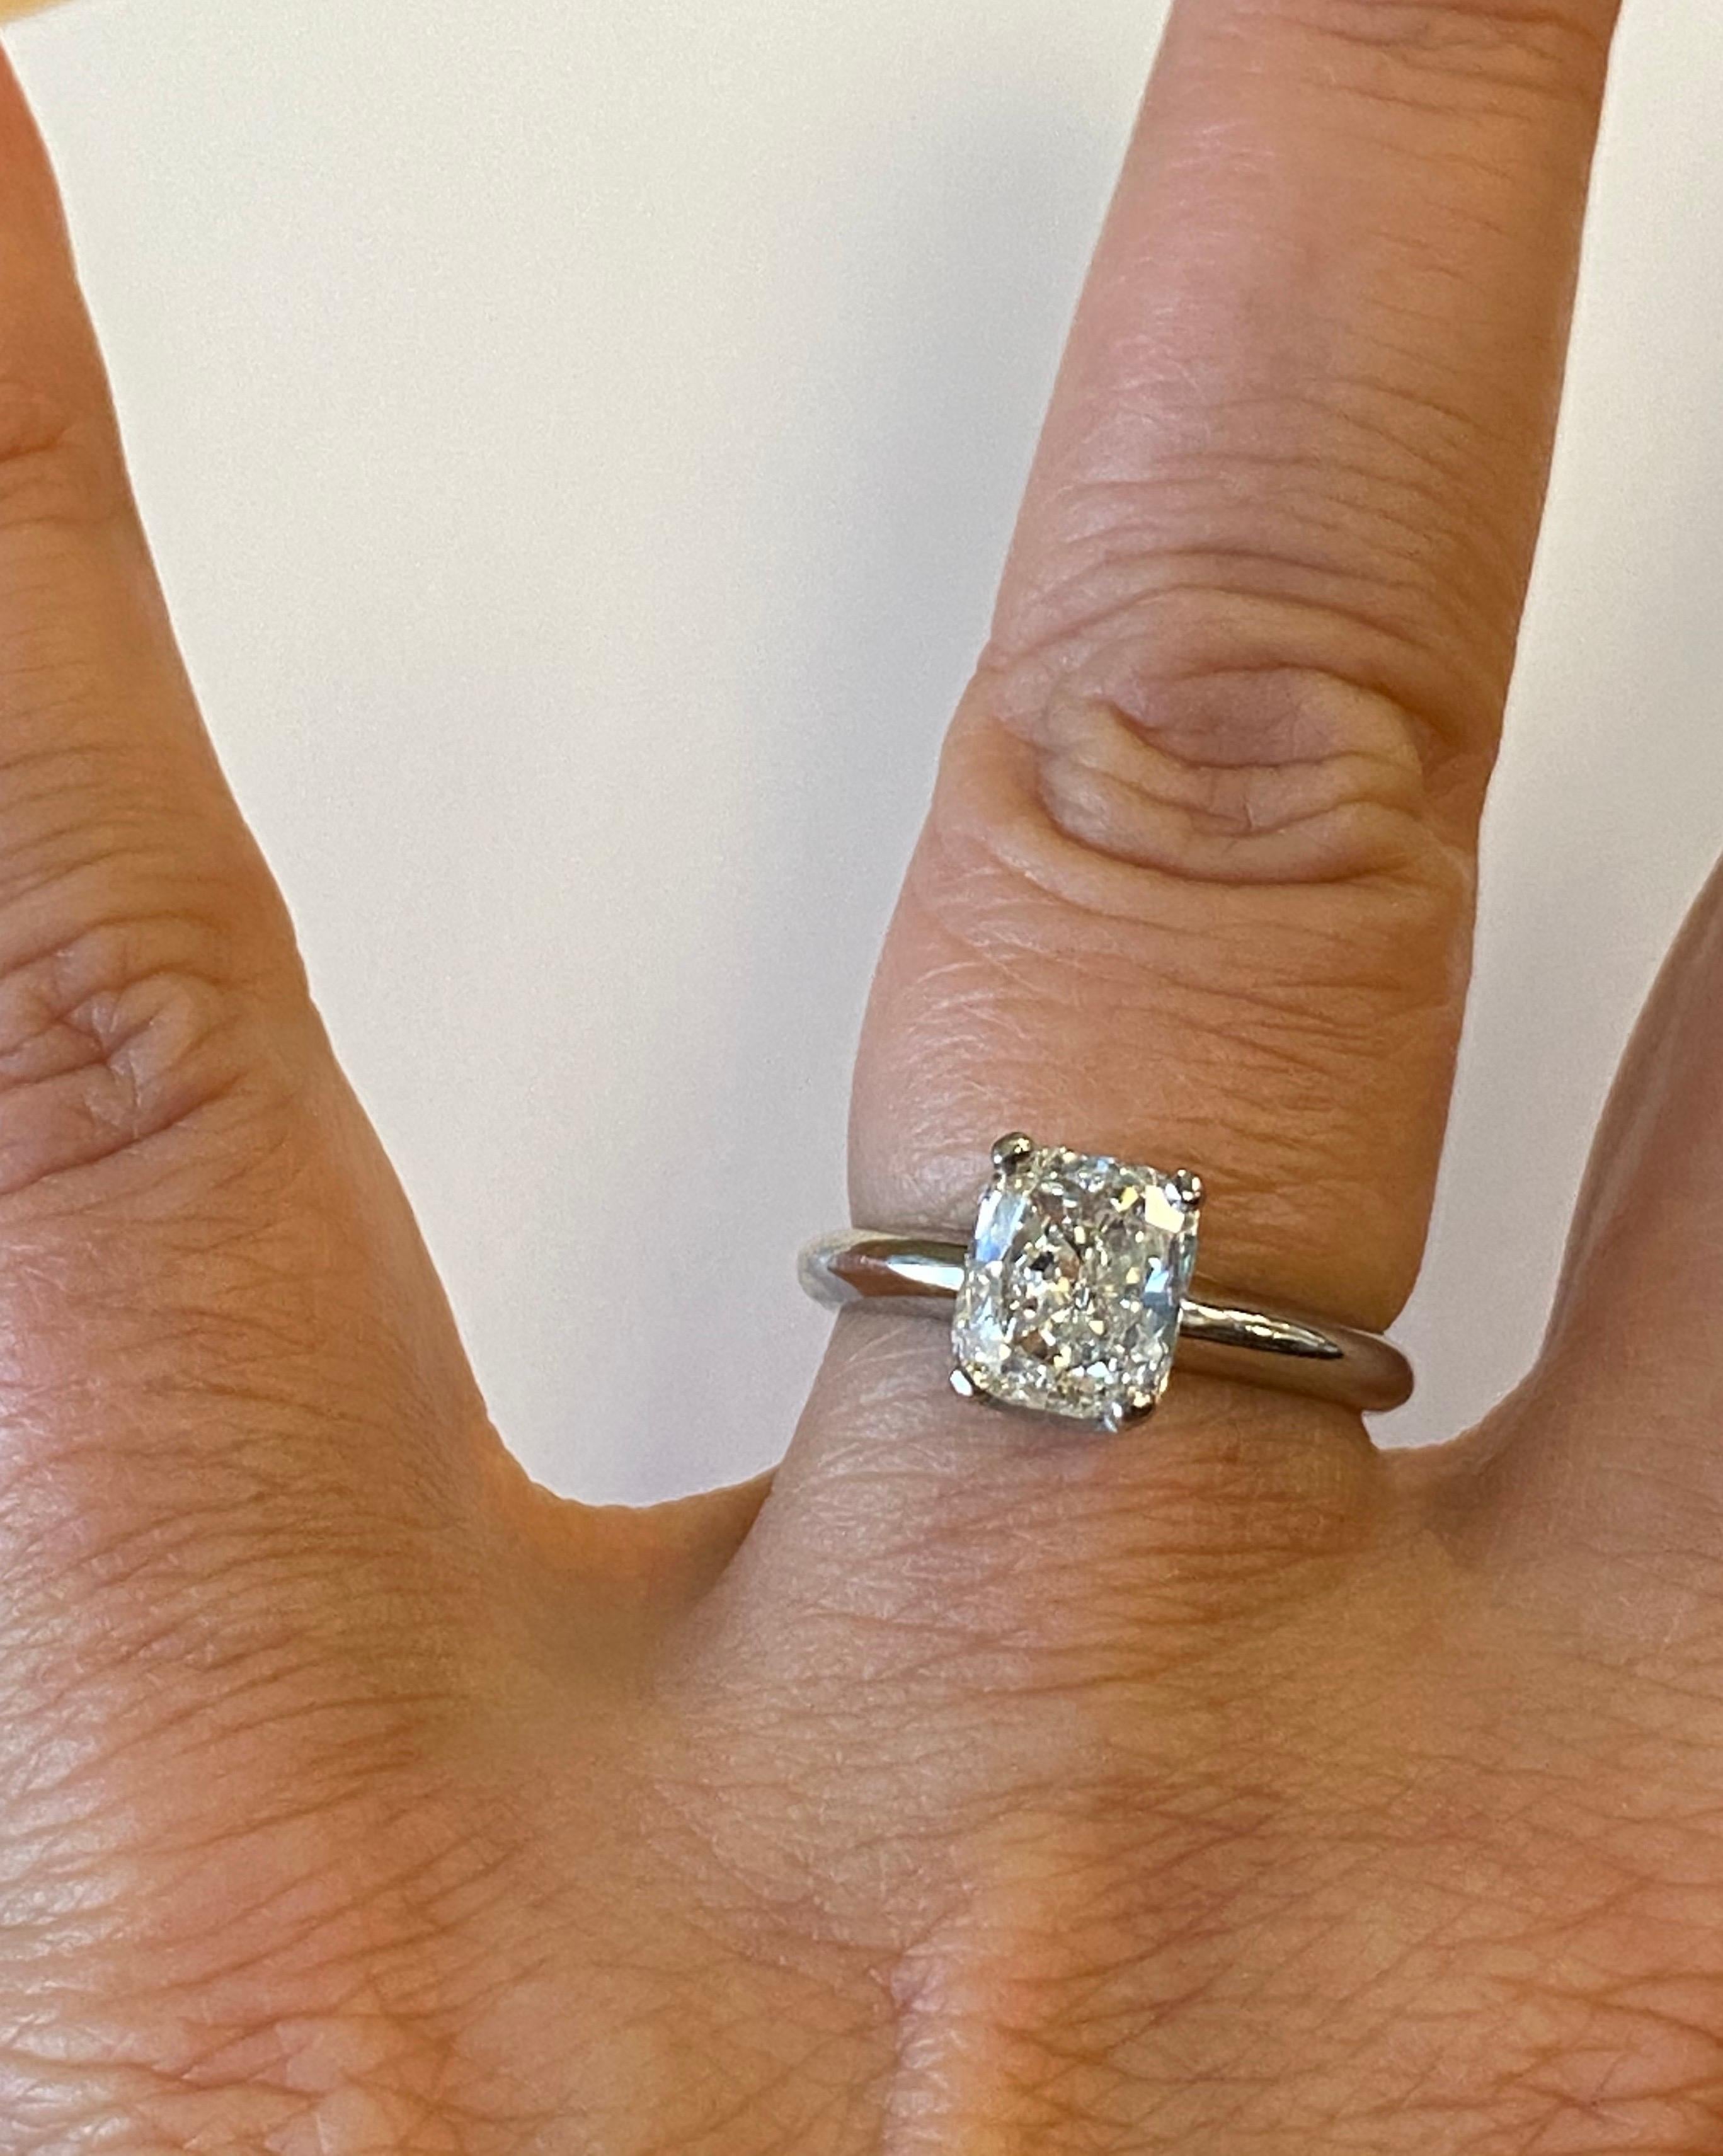 Platin vier Zacken Verlobungsring, Zacken in der Mitte mit GIA zertifiziert Cushion Form Diamant, mit einem Gewicht von 1,52cts, I Farbe, VS2 Klarheit.
Fingergröße 6, kann größenmäßig angepasst werden.
Verkauft für $12.500